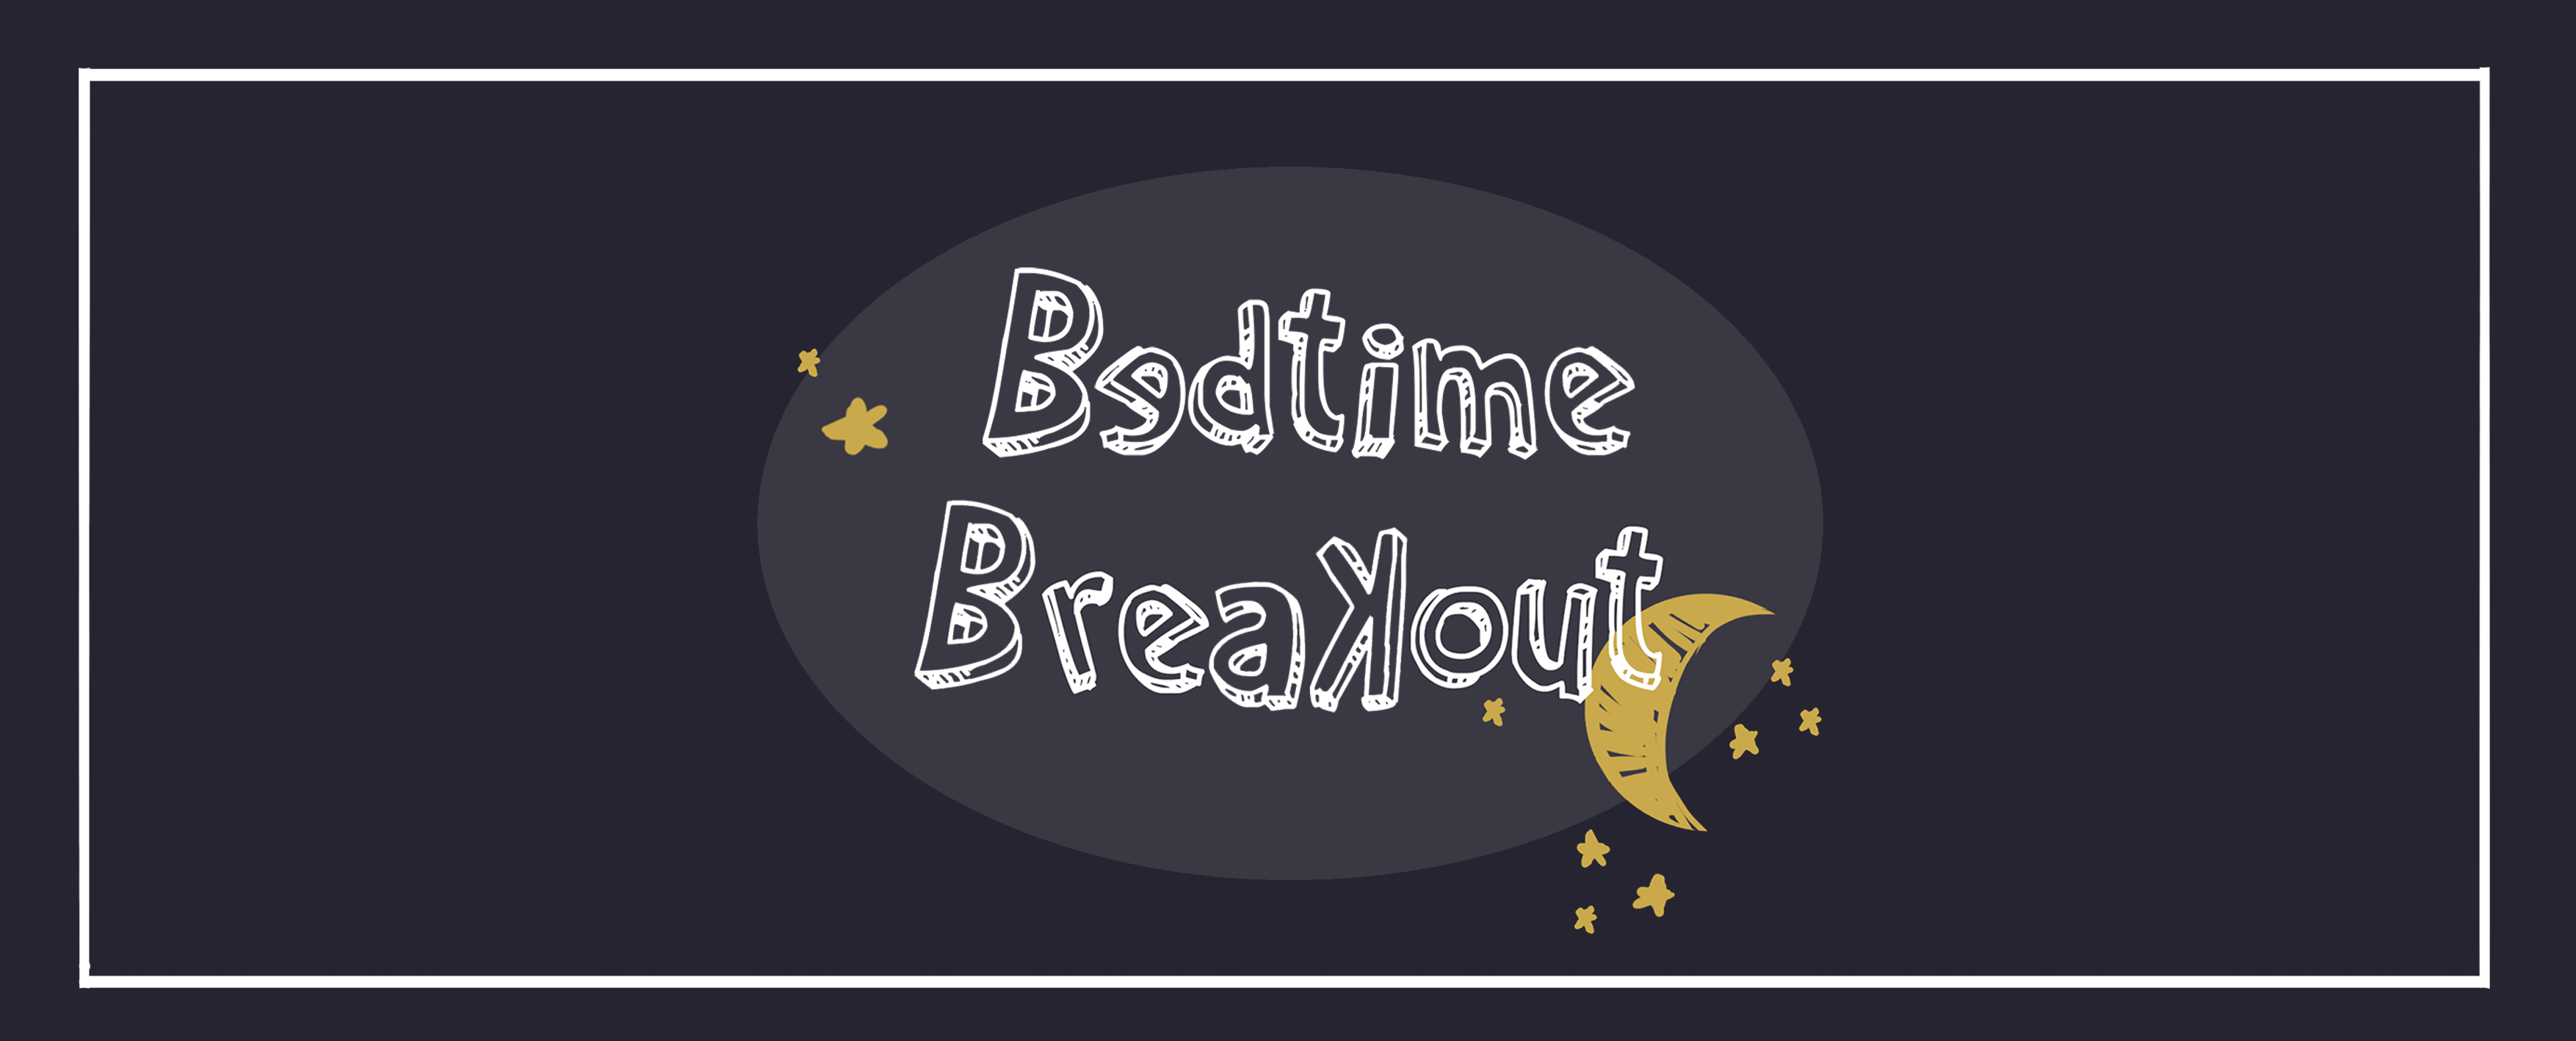 Bedtime Breakout